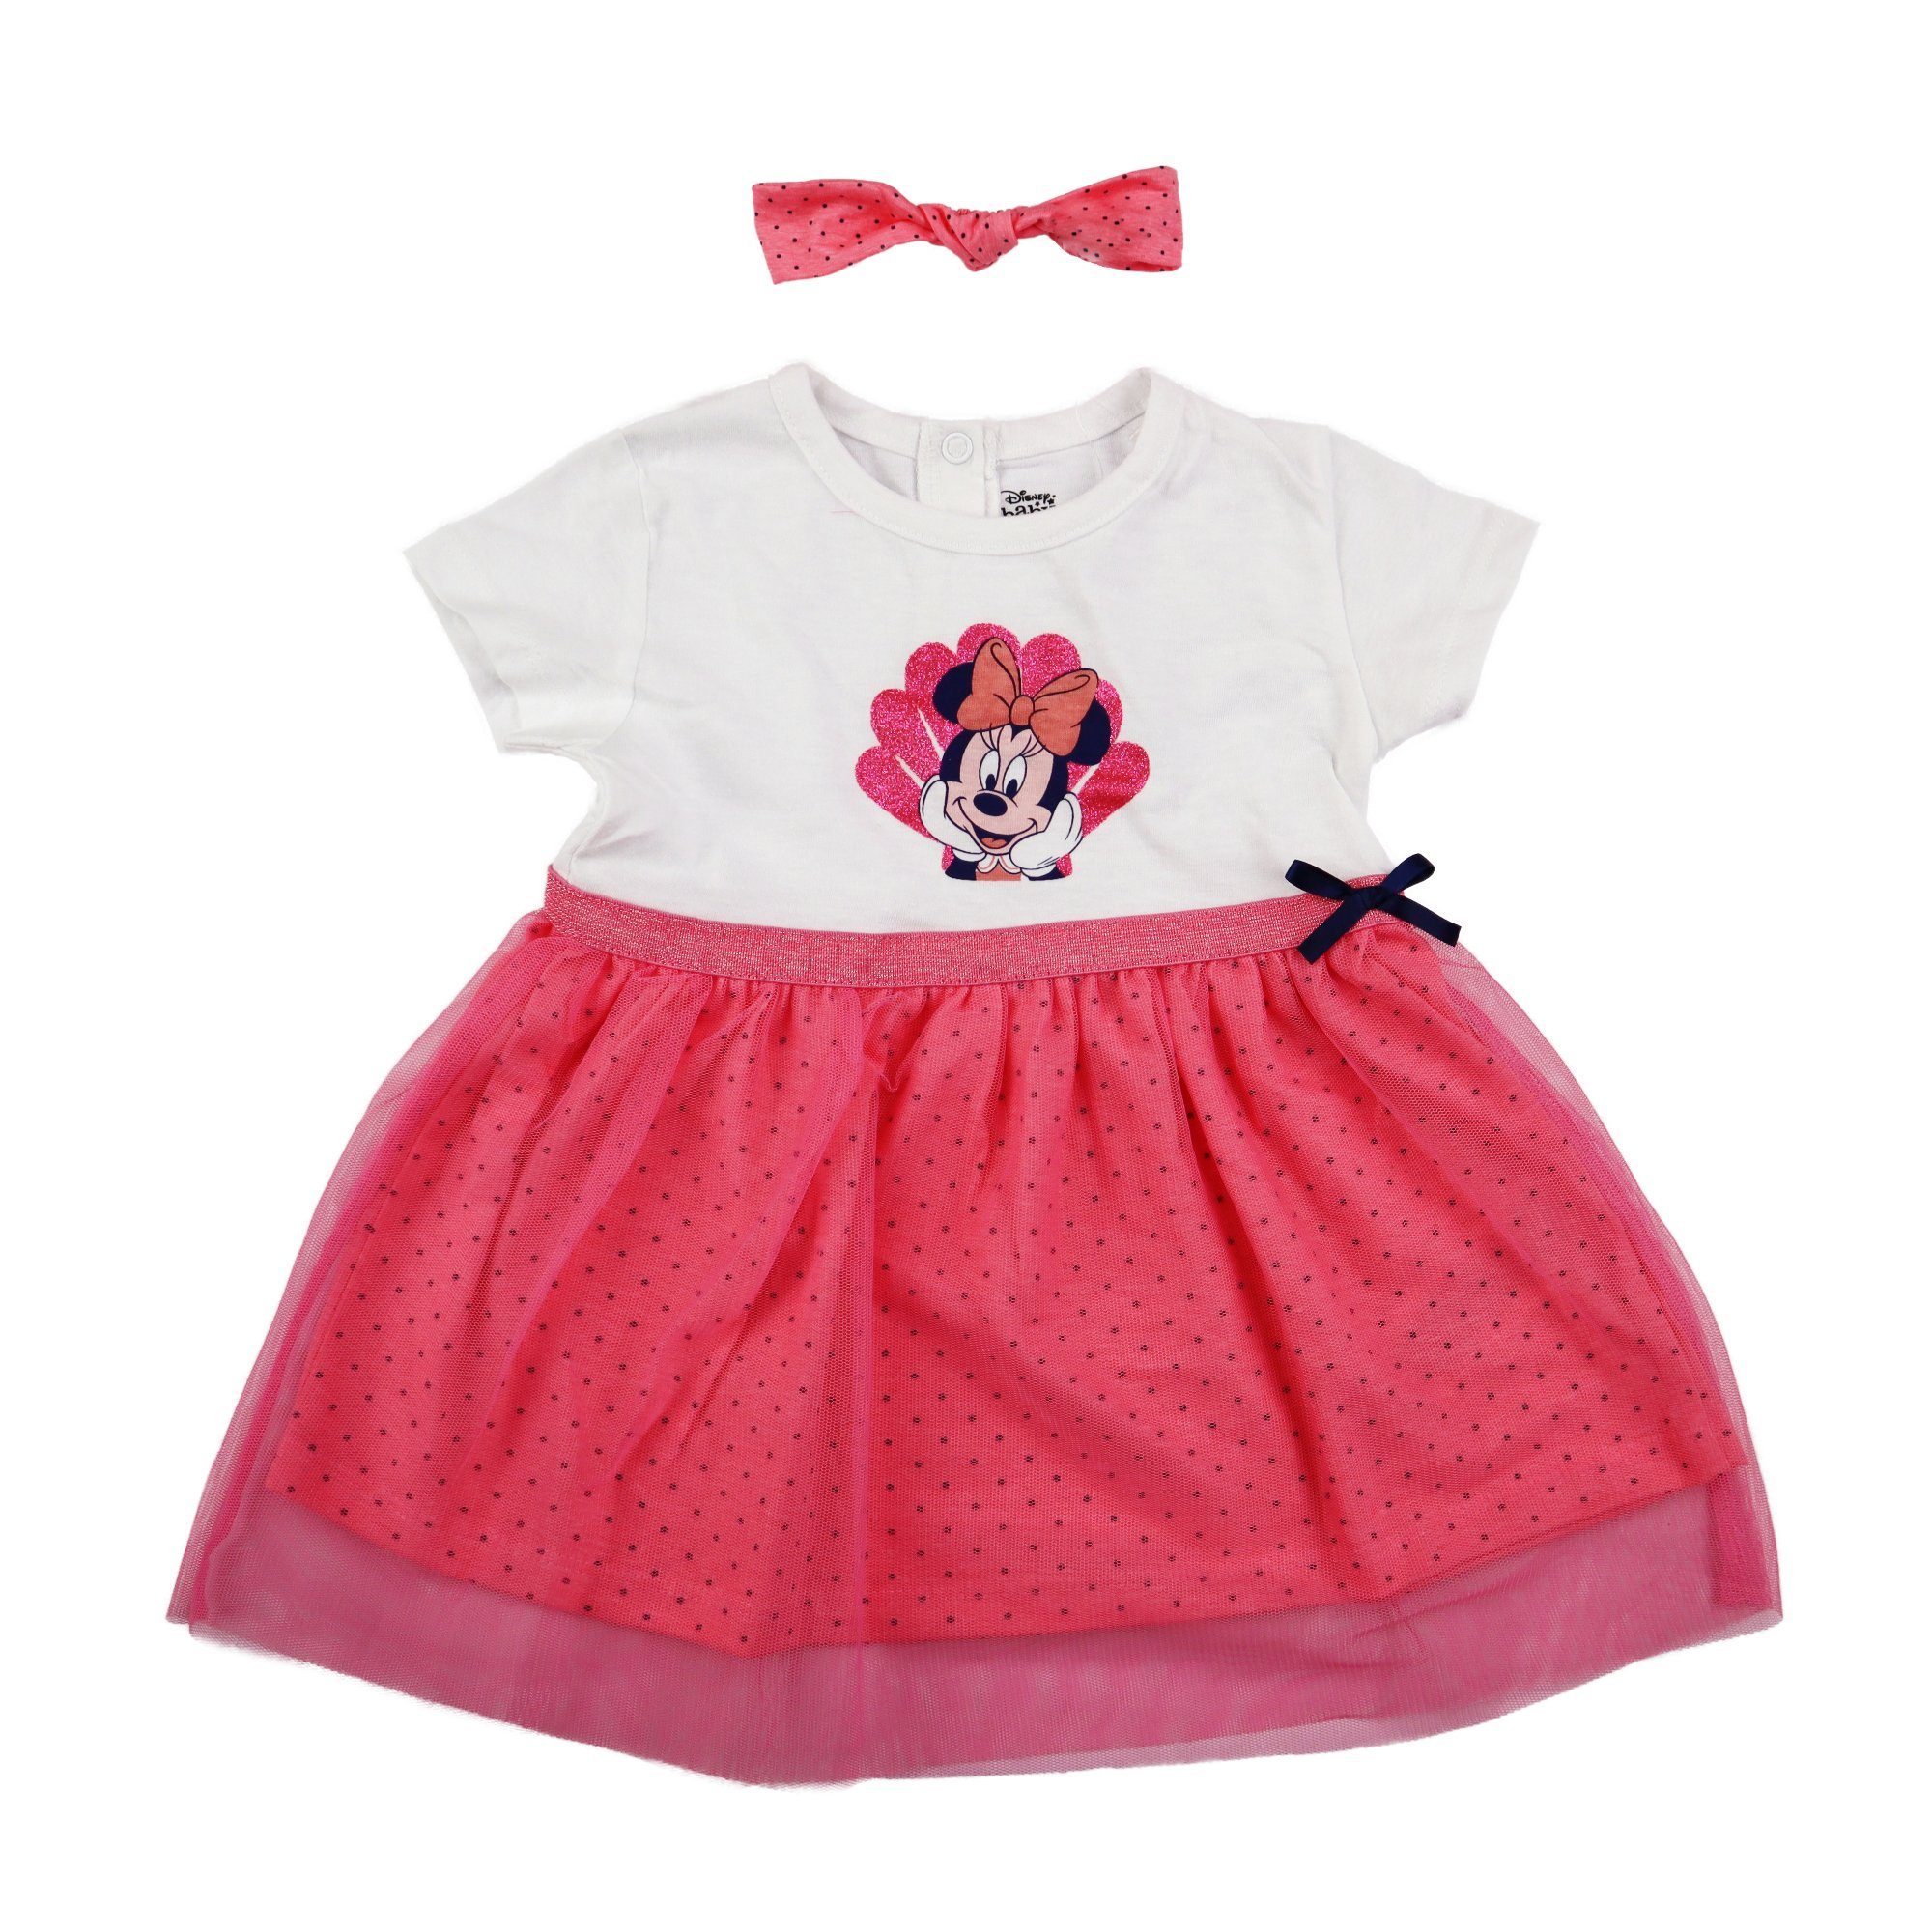 Minnie Gr. Disney Baby Minnie Maus 62 Baumwolle Sommerkleid Kleid bis Mouse 86, Mädchen